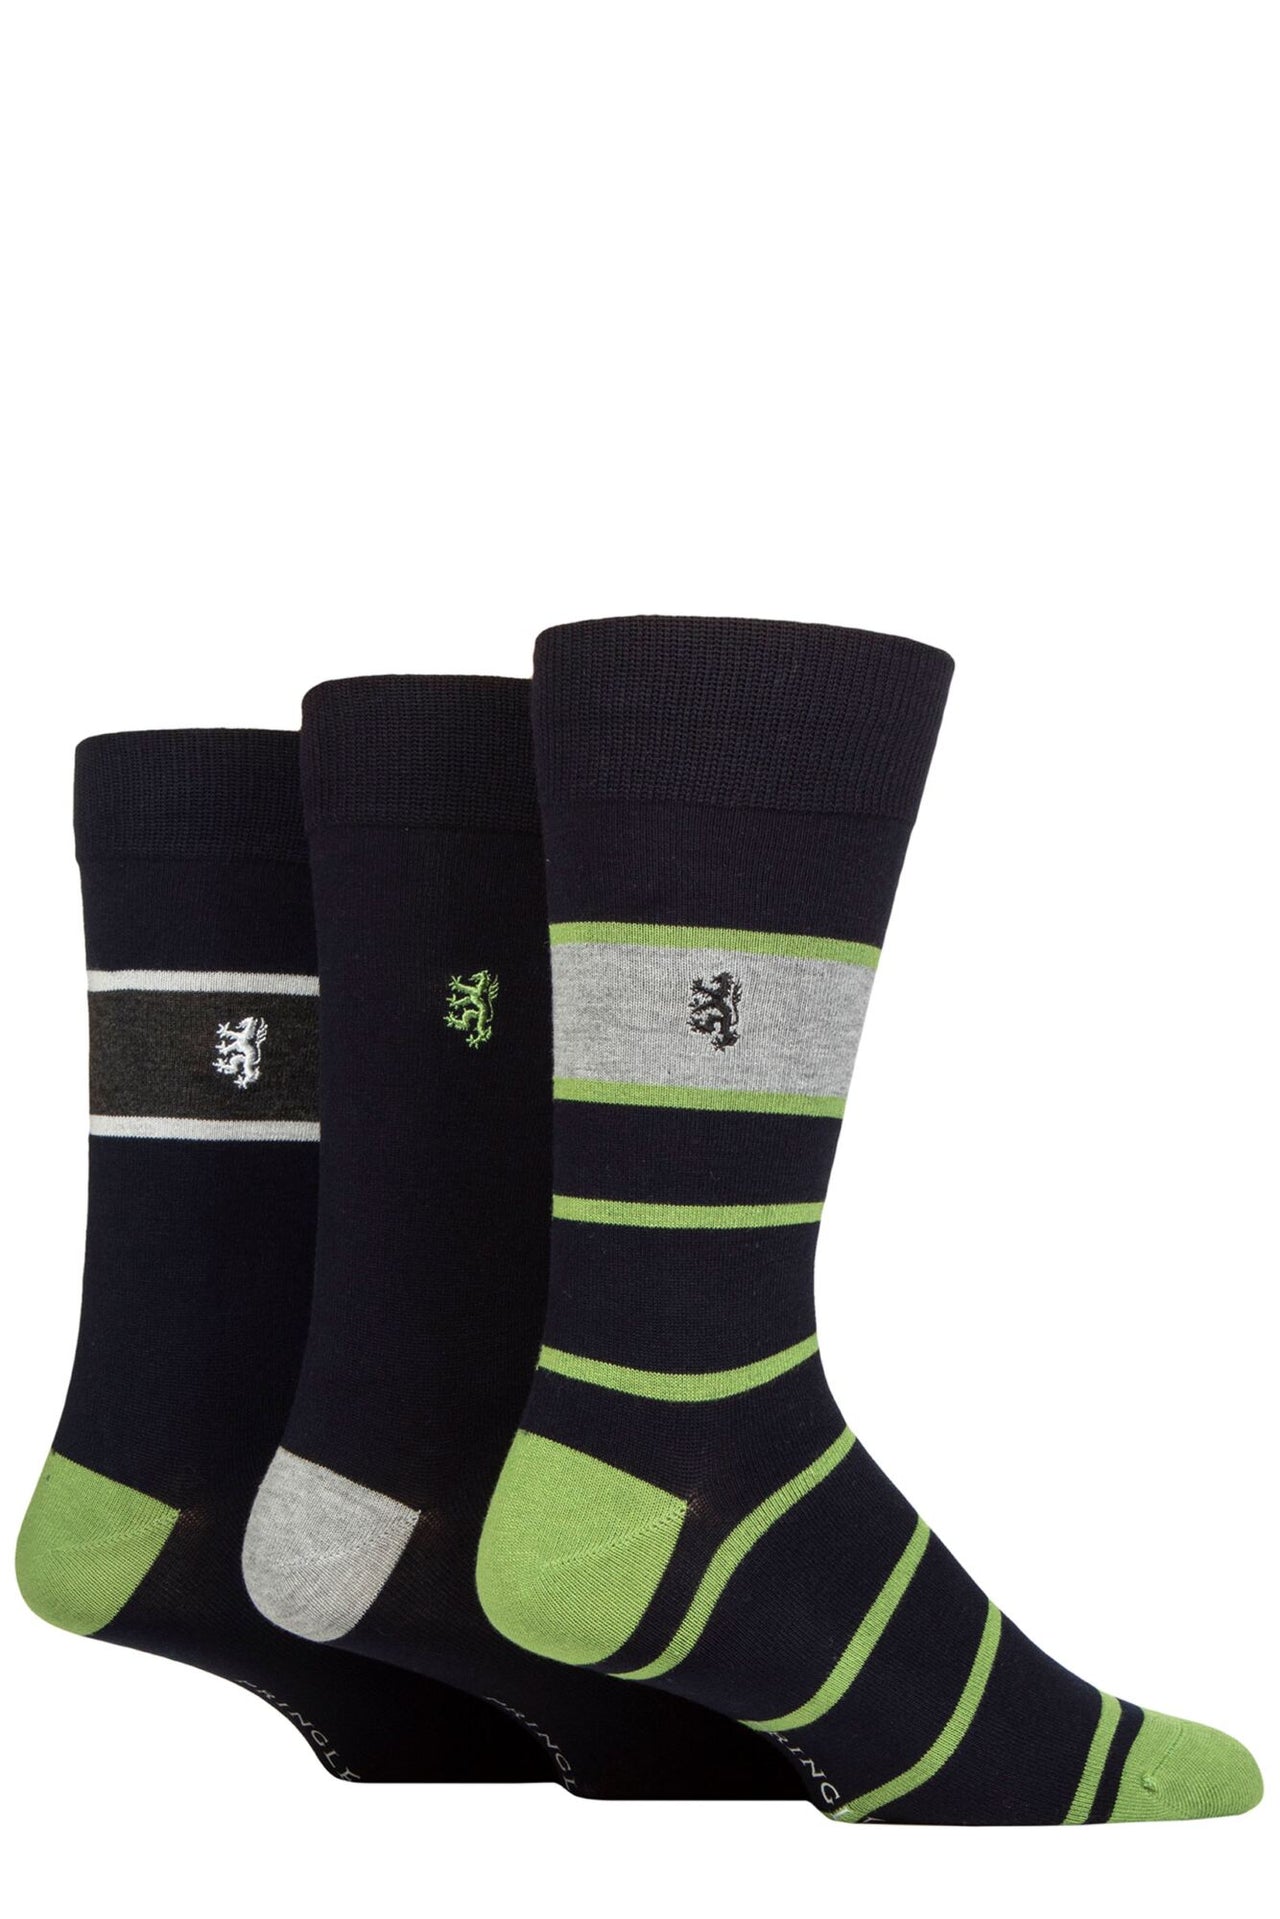 Men's 3 Pair Pringle Bamboo Socks - Navy/Green Block Stripe